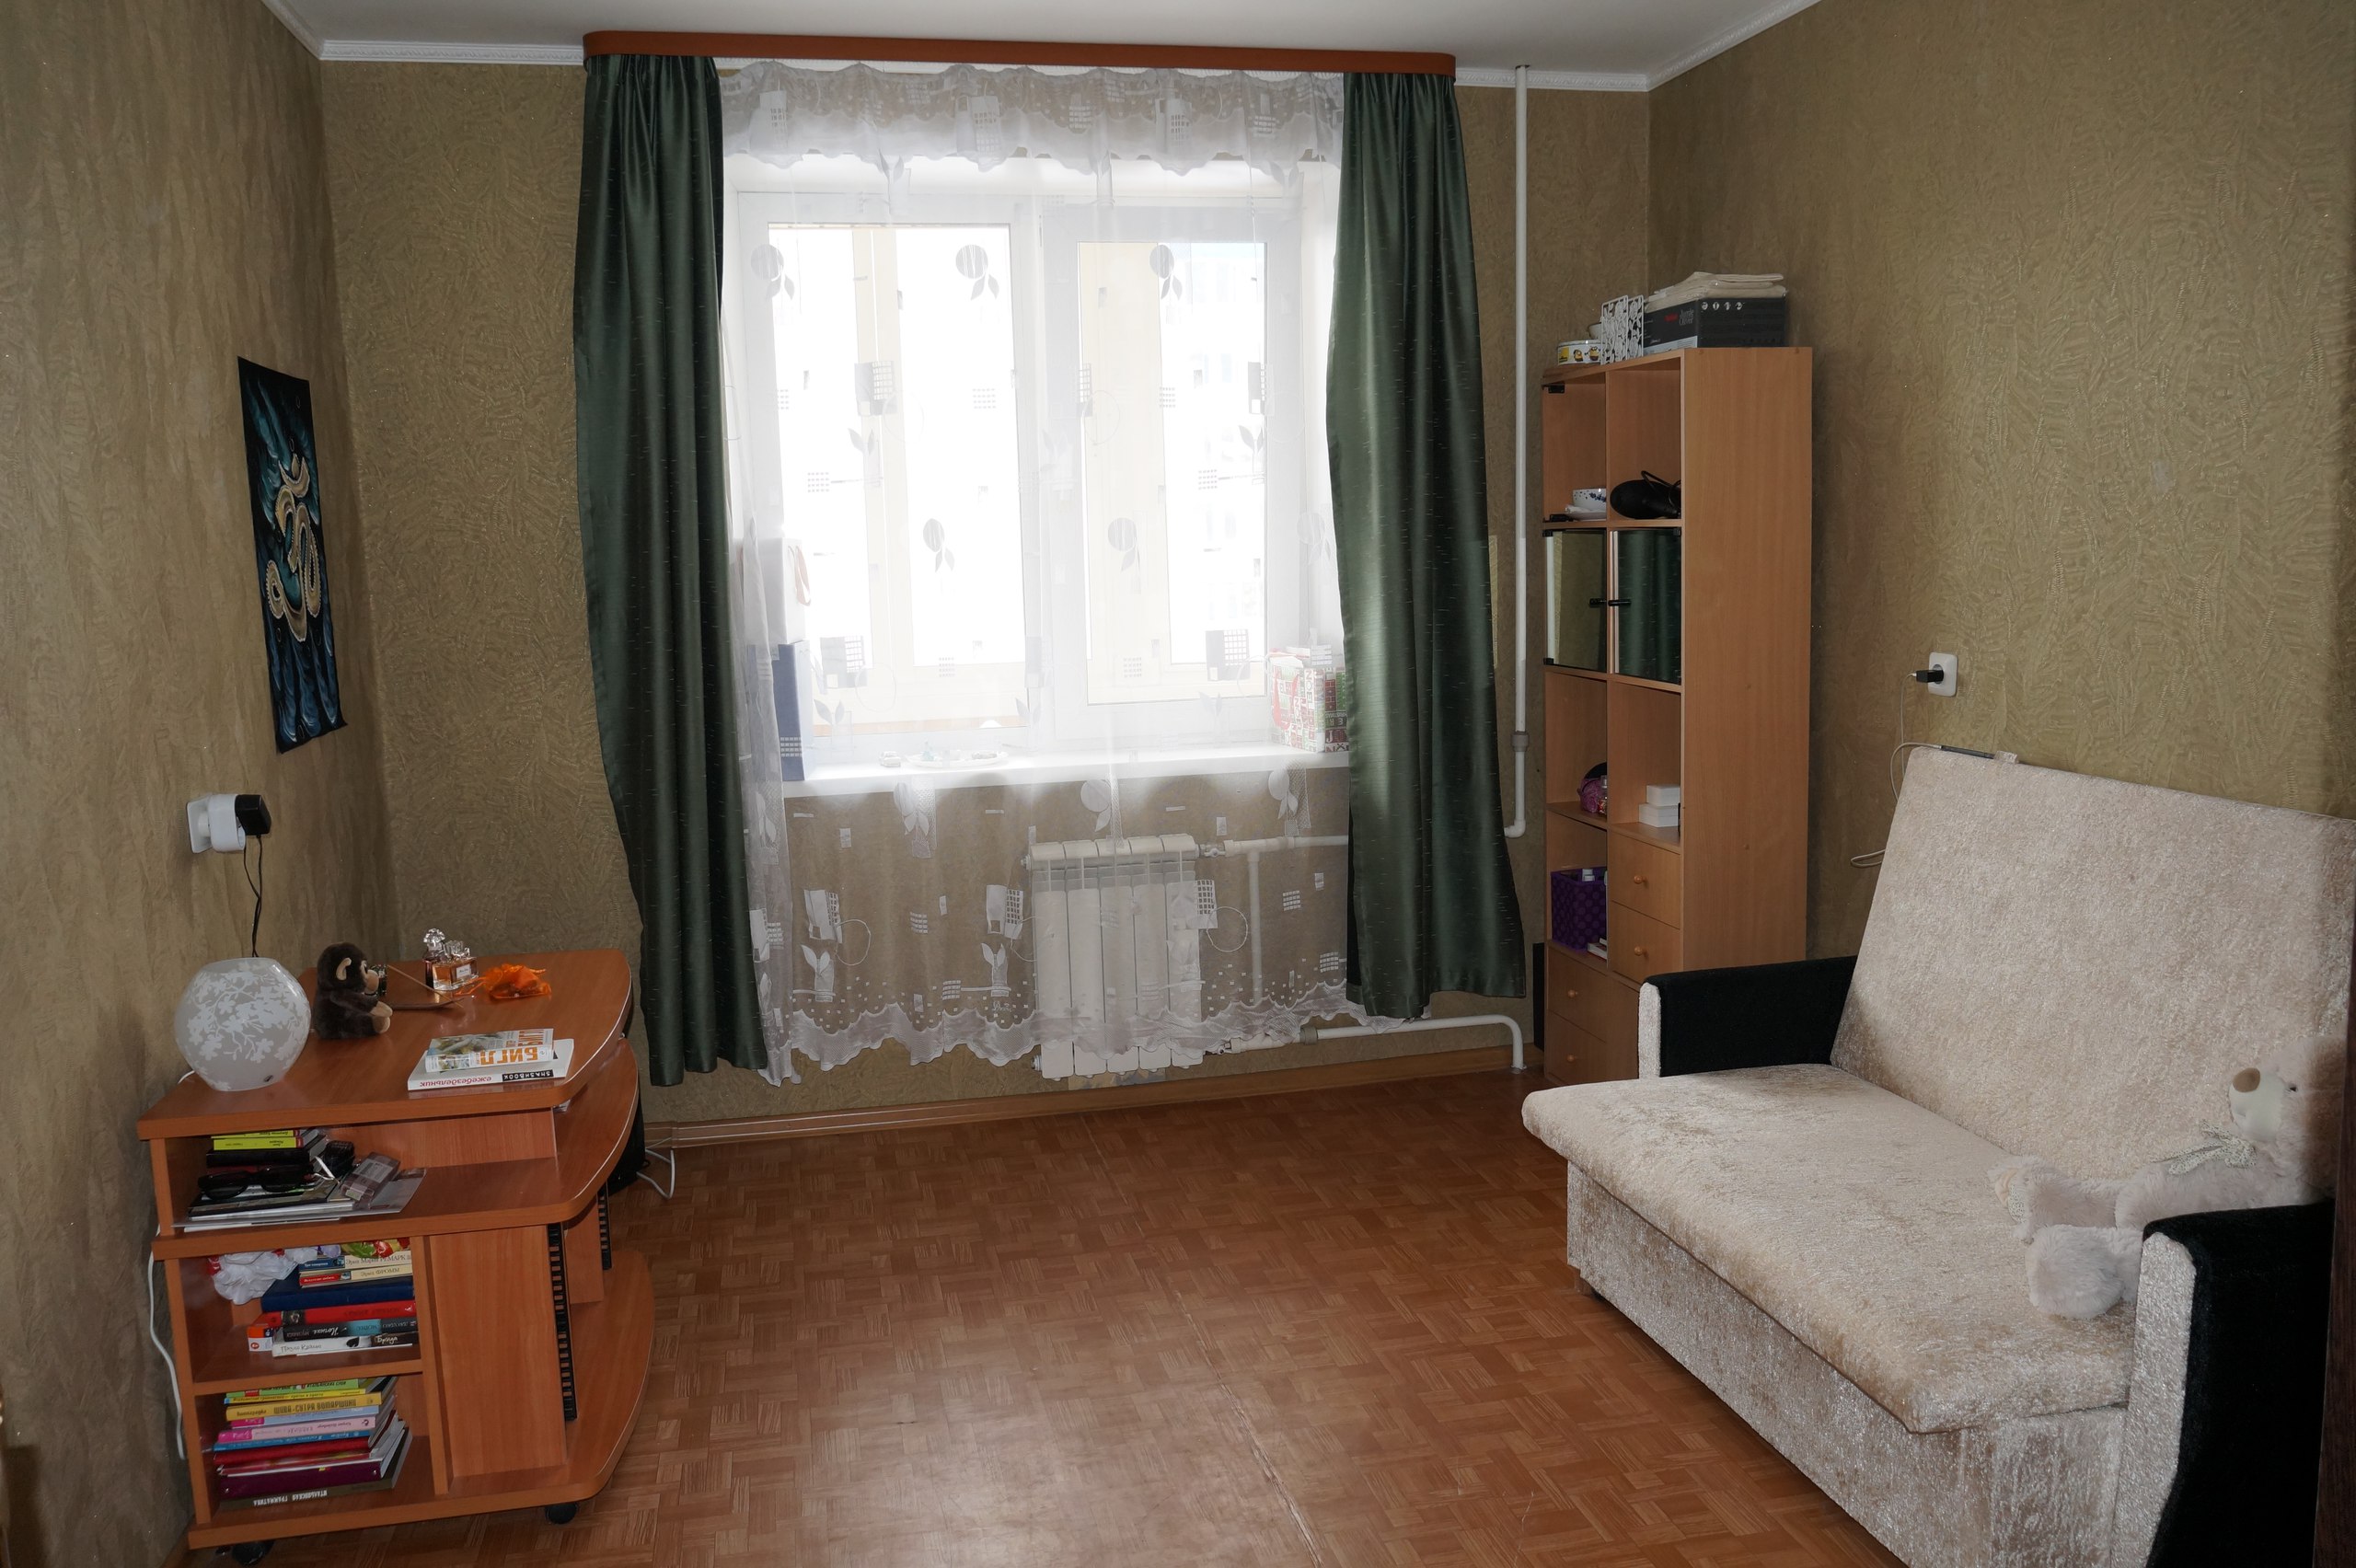 Купить комнату в общежитии петербурга. Комната СПБ. Продается комната. Вторичное жилье комната. Комната в общежитии от собственника.